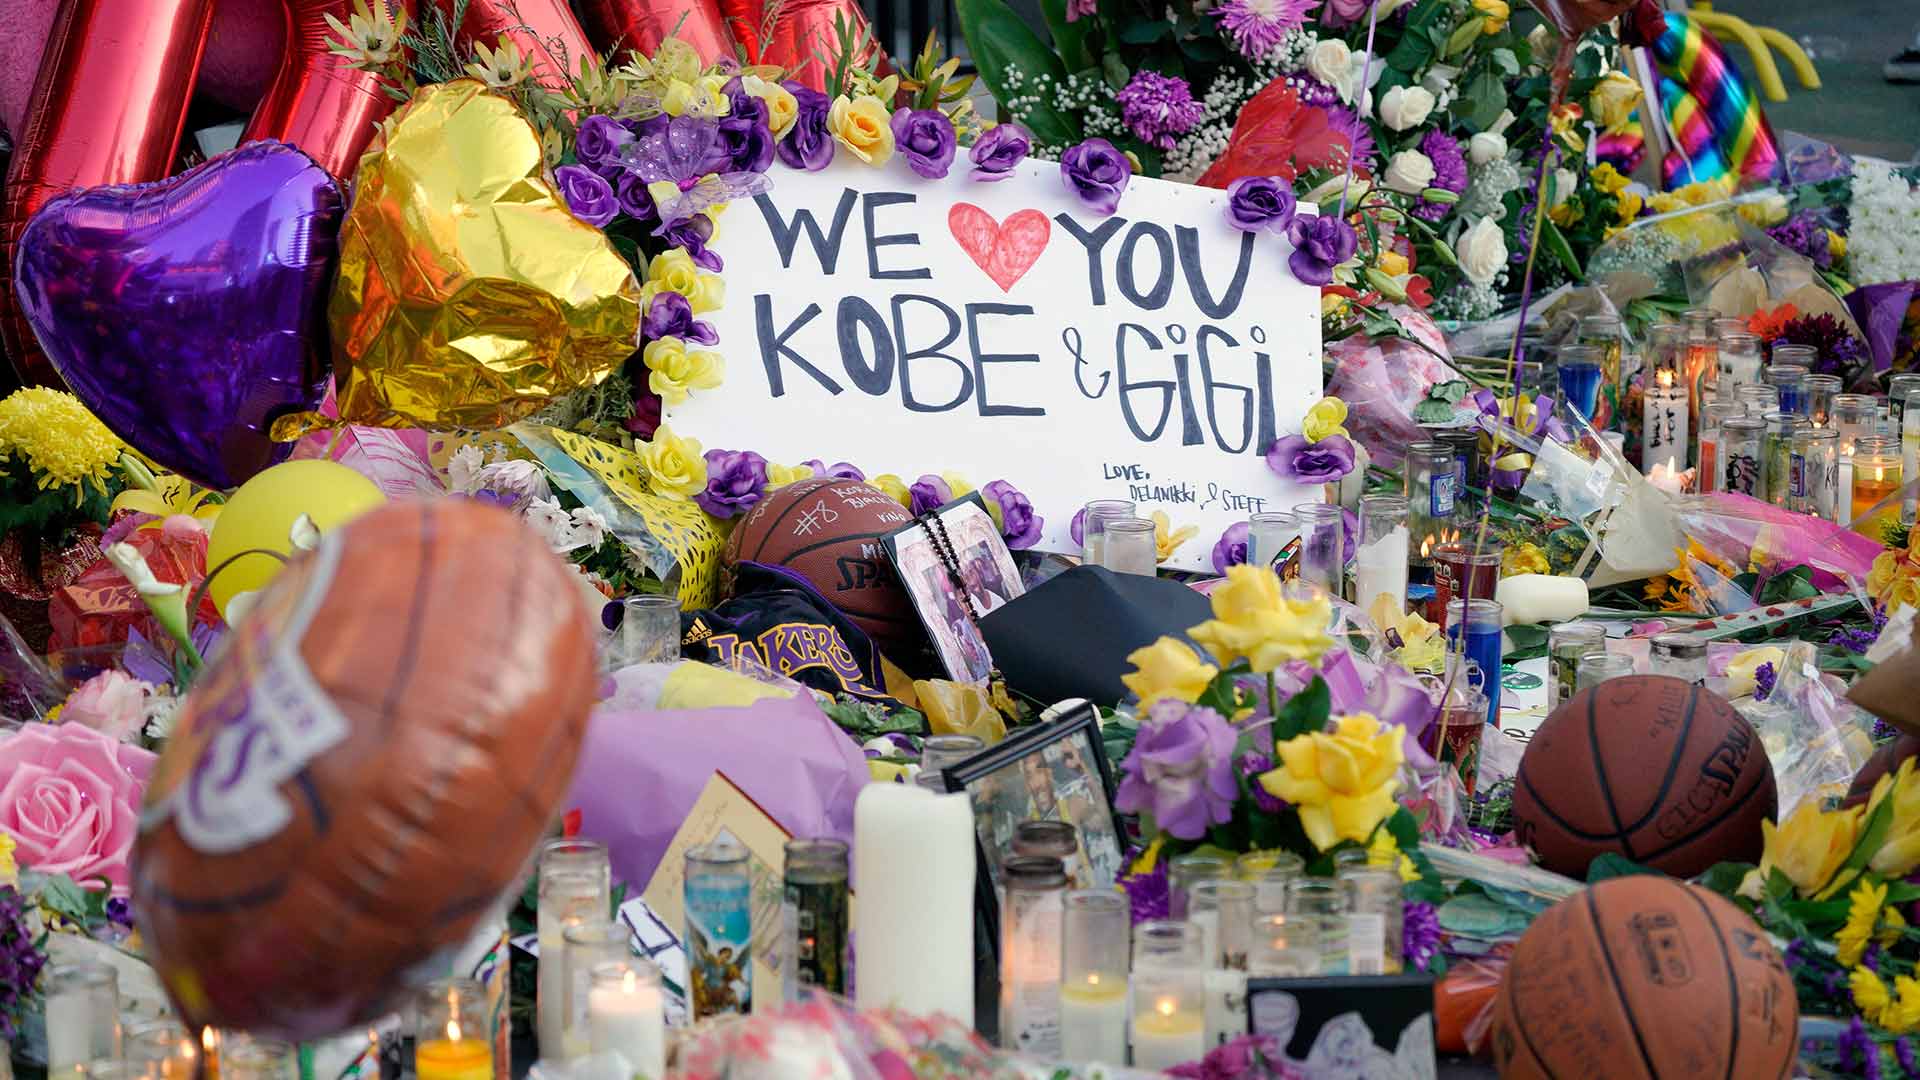 El cuerpo de Kobe Bryant, identificado oficialmente entre las víctimas del accidente